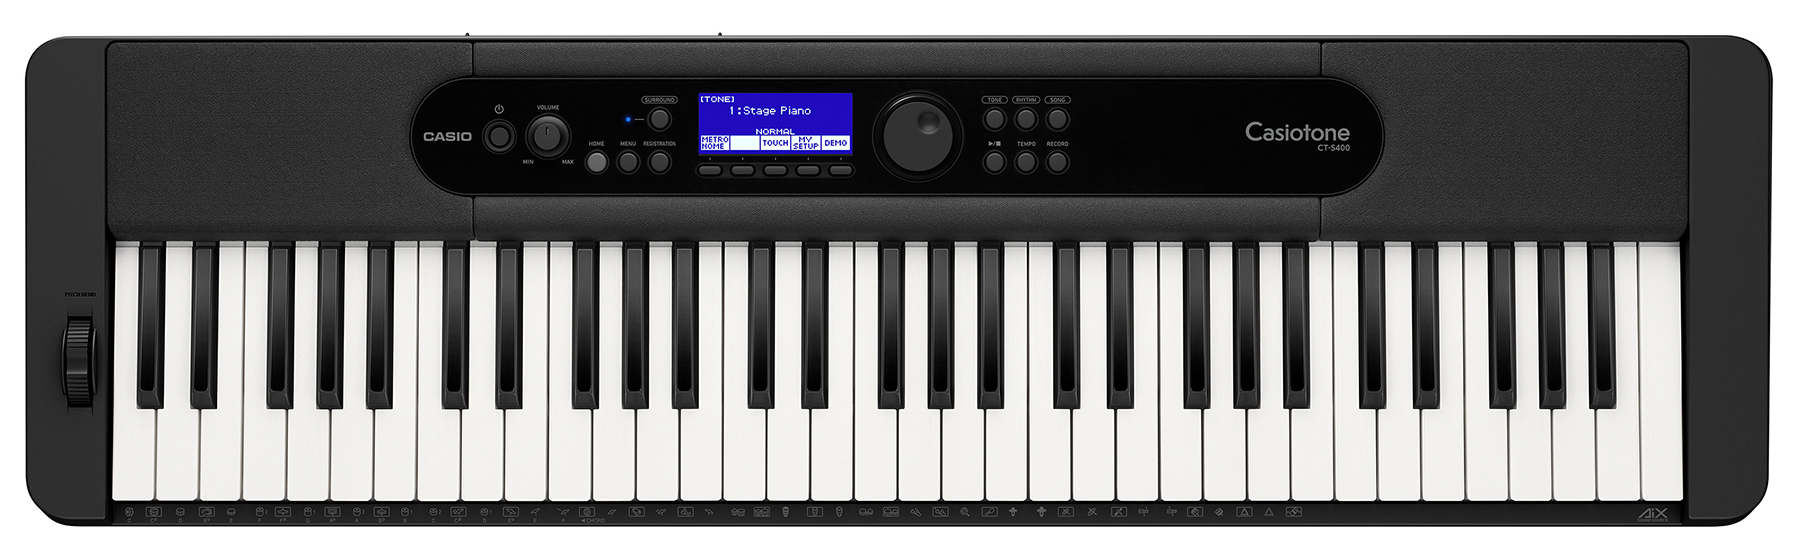 Køb Casio CT-S400 Keyboard - Pris 1799.00 kr.